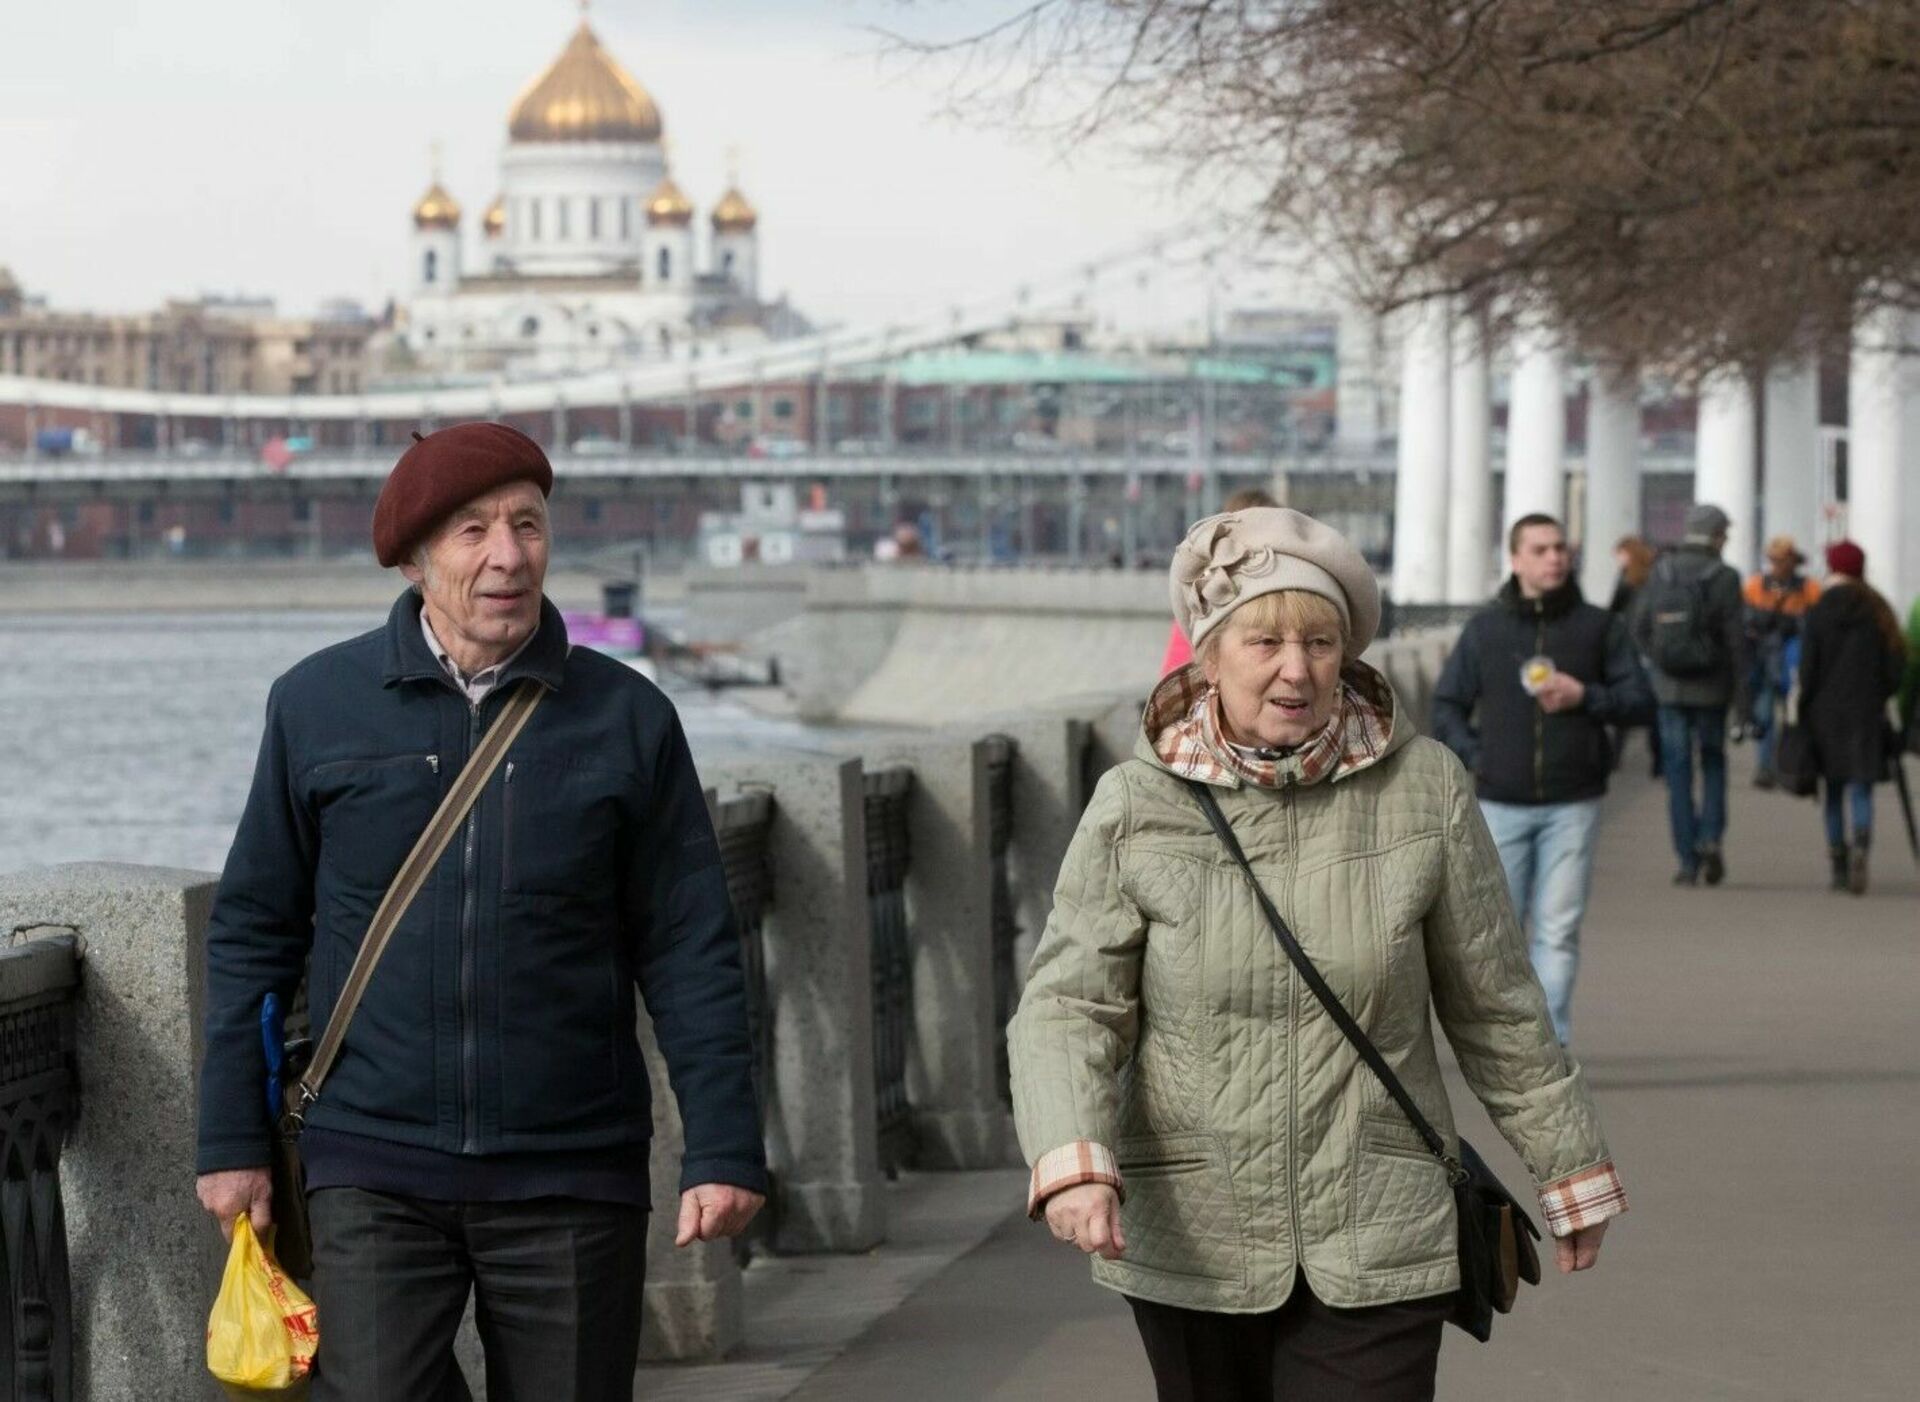 Пенсии московских пенсионеров